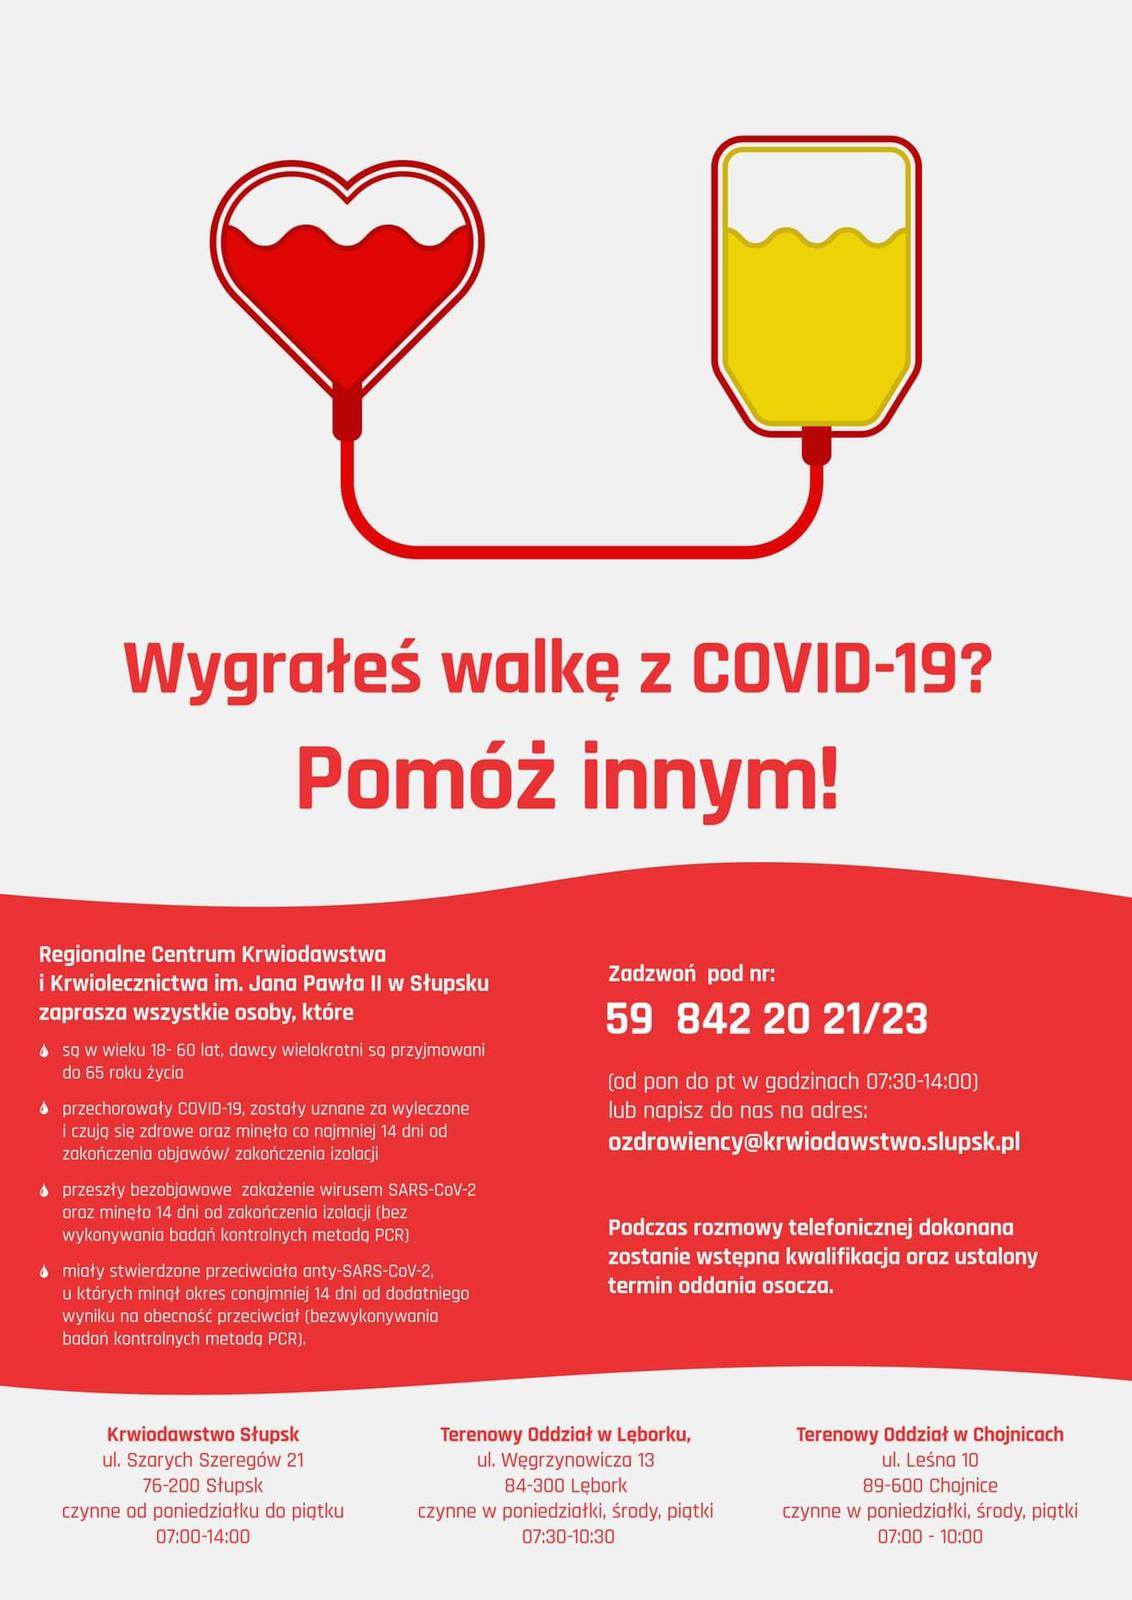 Jesteś ozdrowieńcem COVID19? Oddaj osocze. Jesteś zdrowy? Oddaj krew. Pomóż innym wyzdrowieć i pokonać wirusa. Twoje osocze zawiera przeciwciała, które mogą pomóc w leczeniu chorych na koronawirusa.